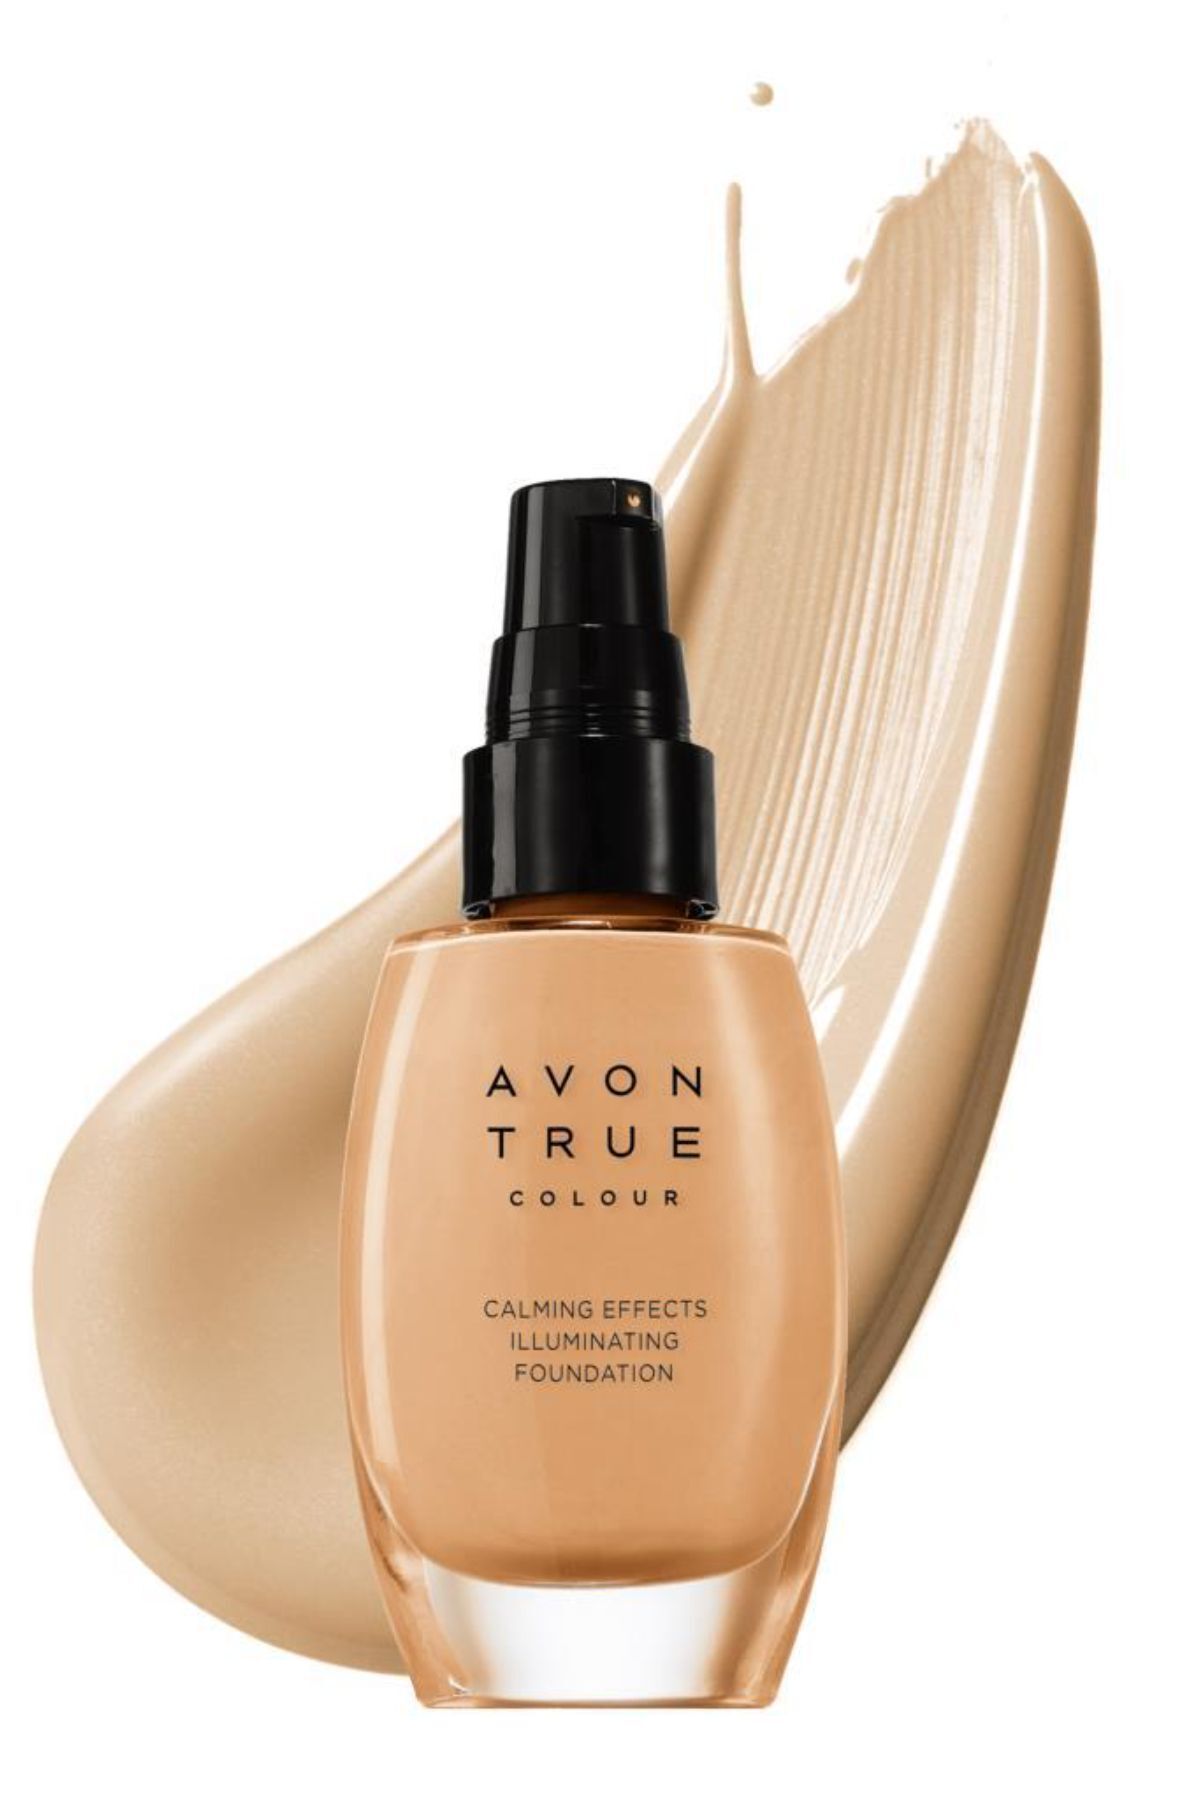 Avon Calming Effects Rahatlatıcı Etkili Ve Işıltı Veren Fondöten 30 Ml. Almond